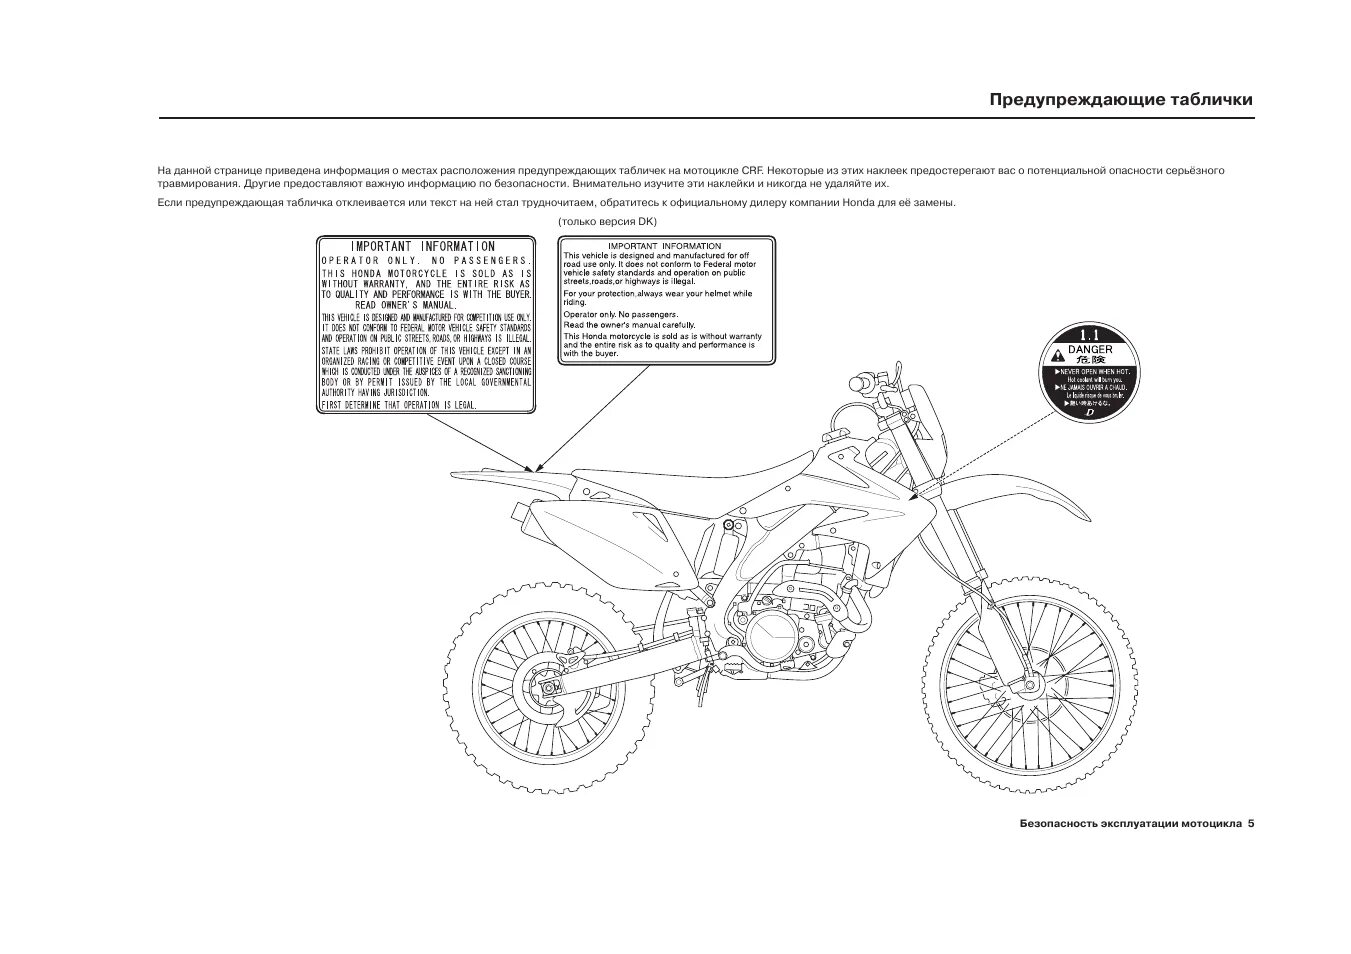 Инструкция для питбайка 125 Велс. Инструкция мотоцикла. Руководство пользователя мото. Схема мотоцикла BSE PH.